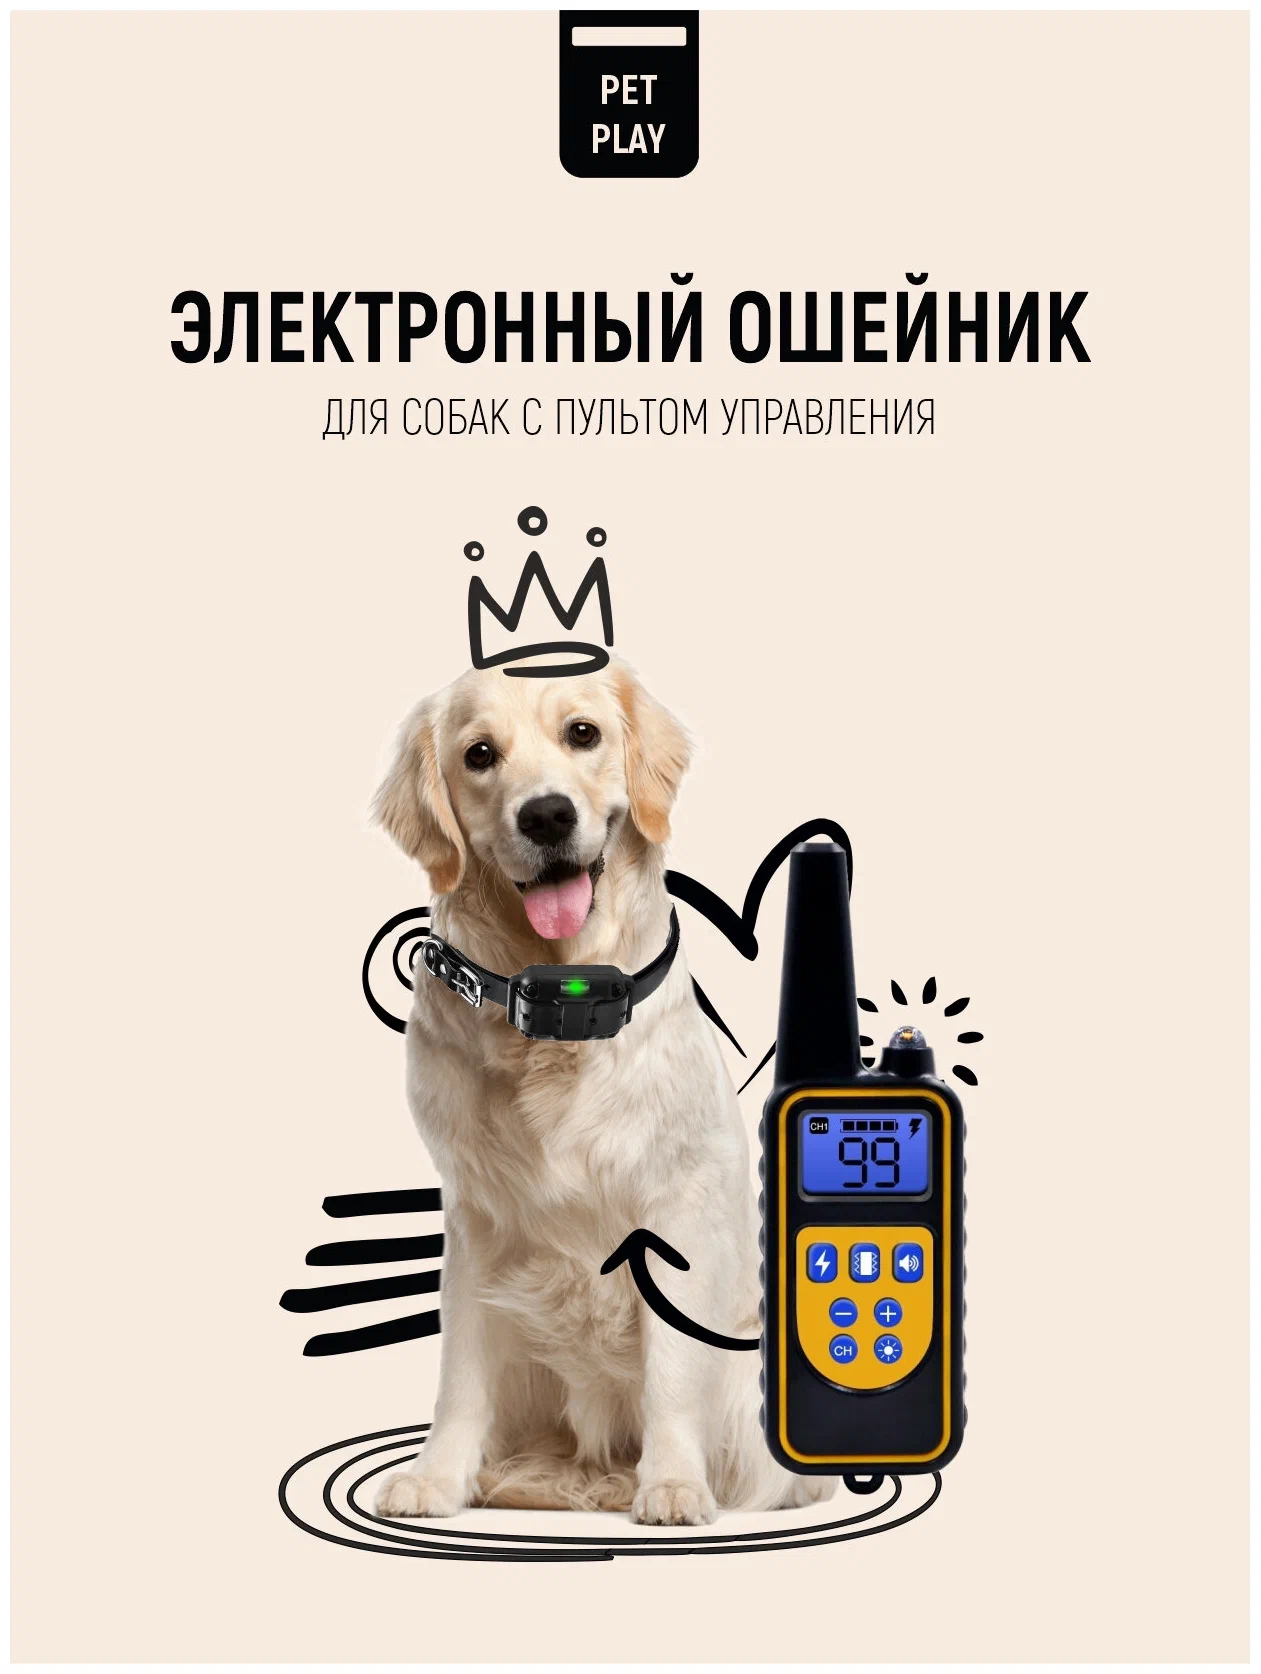 Pet Play / Электронный ошейник для собак/Электронный ошейник для дрессировки и коррекции поведения собак